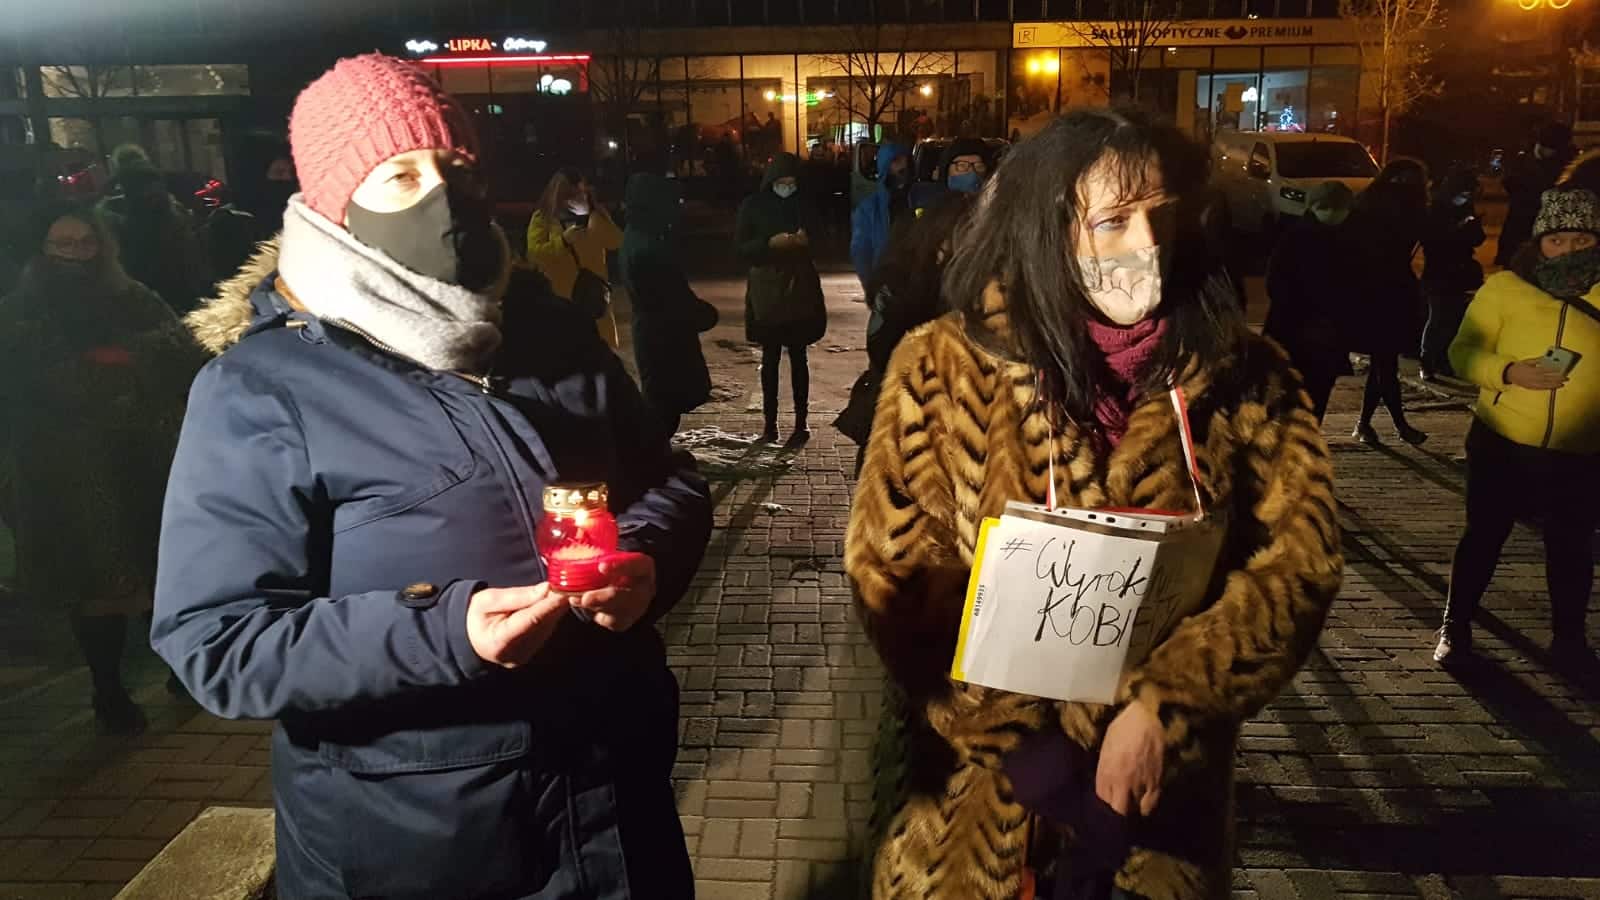 Strajk Kobiet „wyraża swój gniew” w Olsztynie